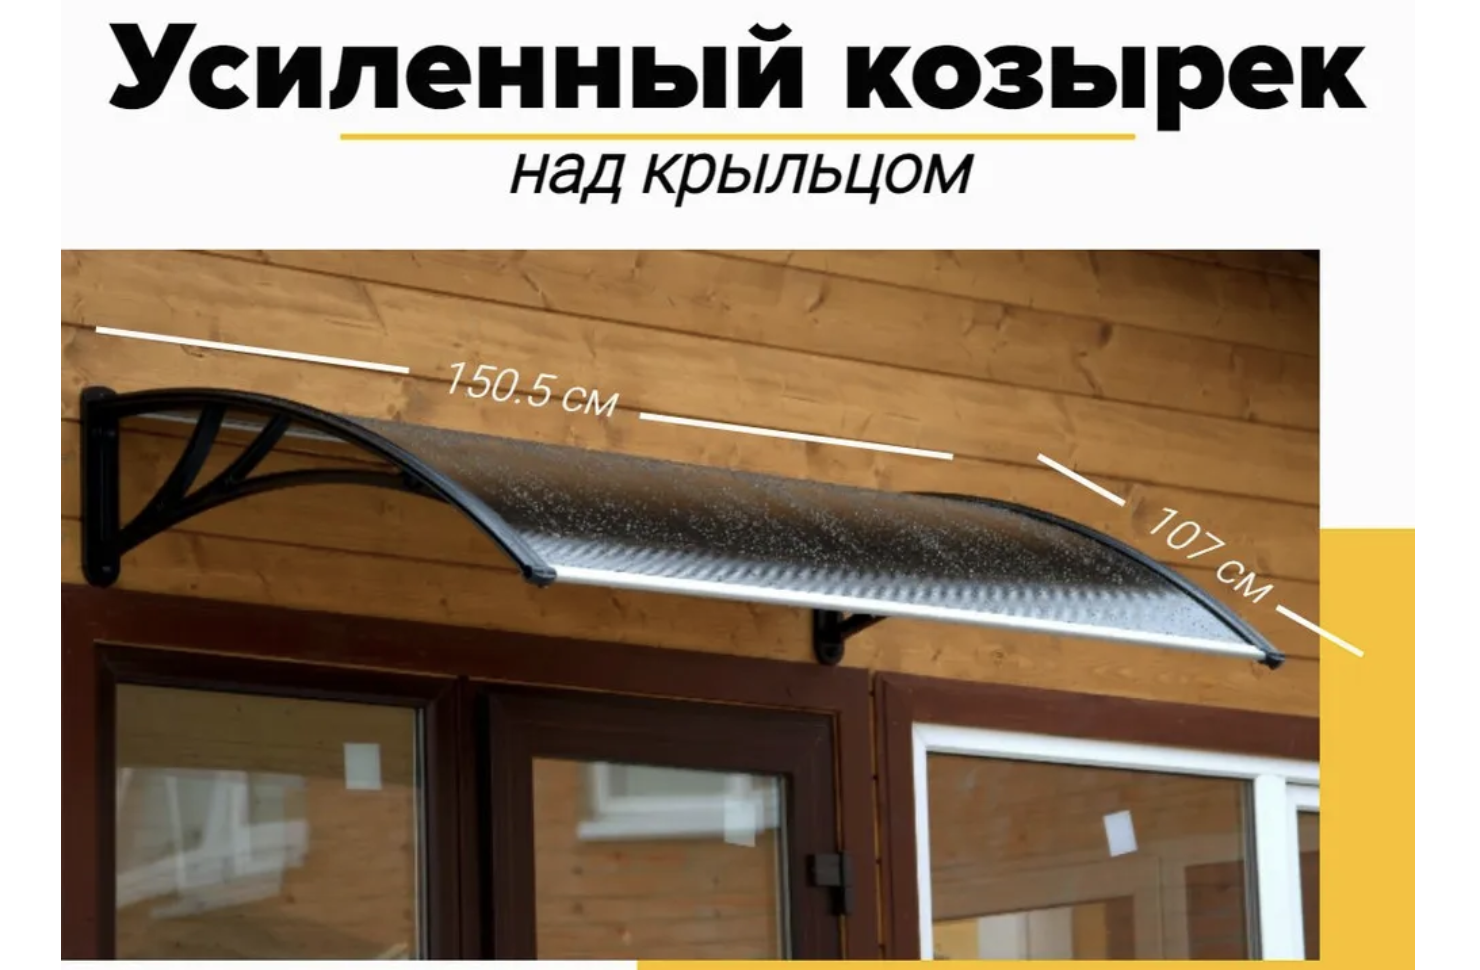 Купить усиленный козырек над дверью, входом, окном для дома в Украине